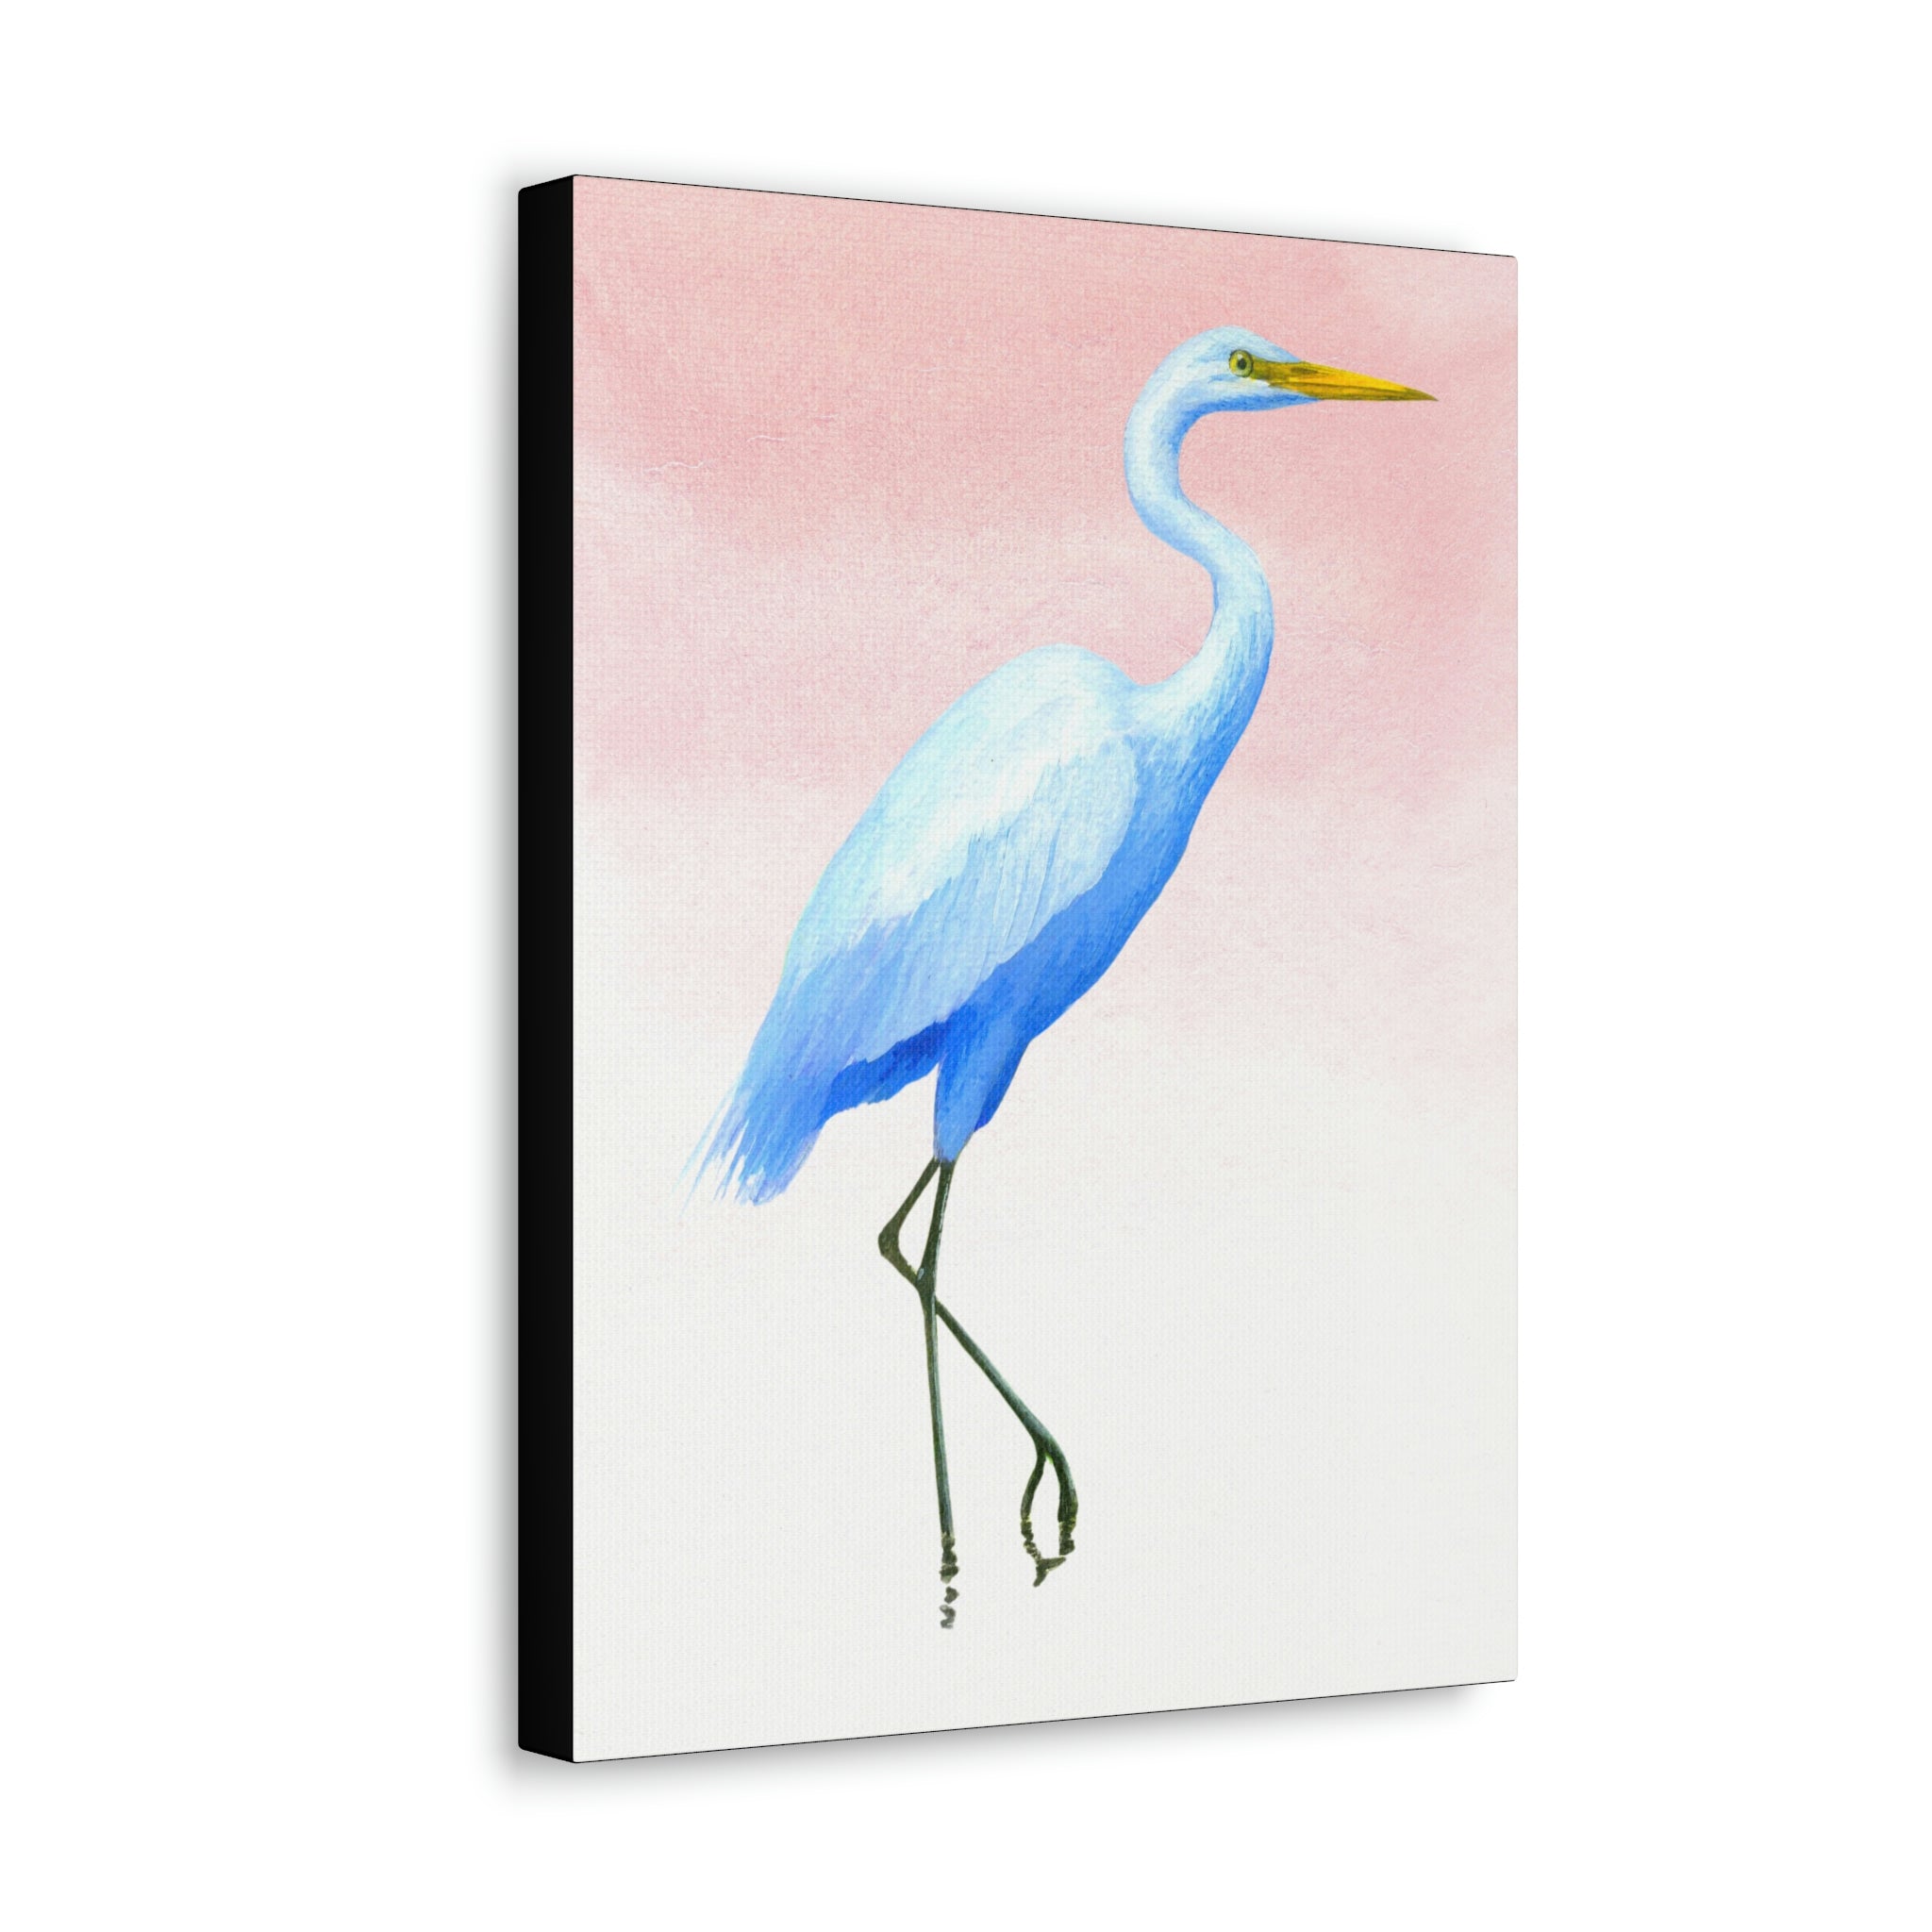 Canvas Wall Art, Great Egret, Bird Art, Wildlife Art, Tropical Birds, Caribbean Art